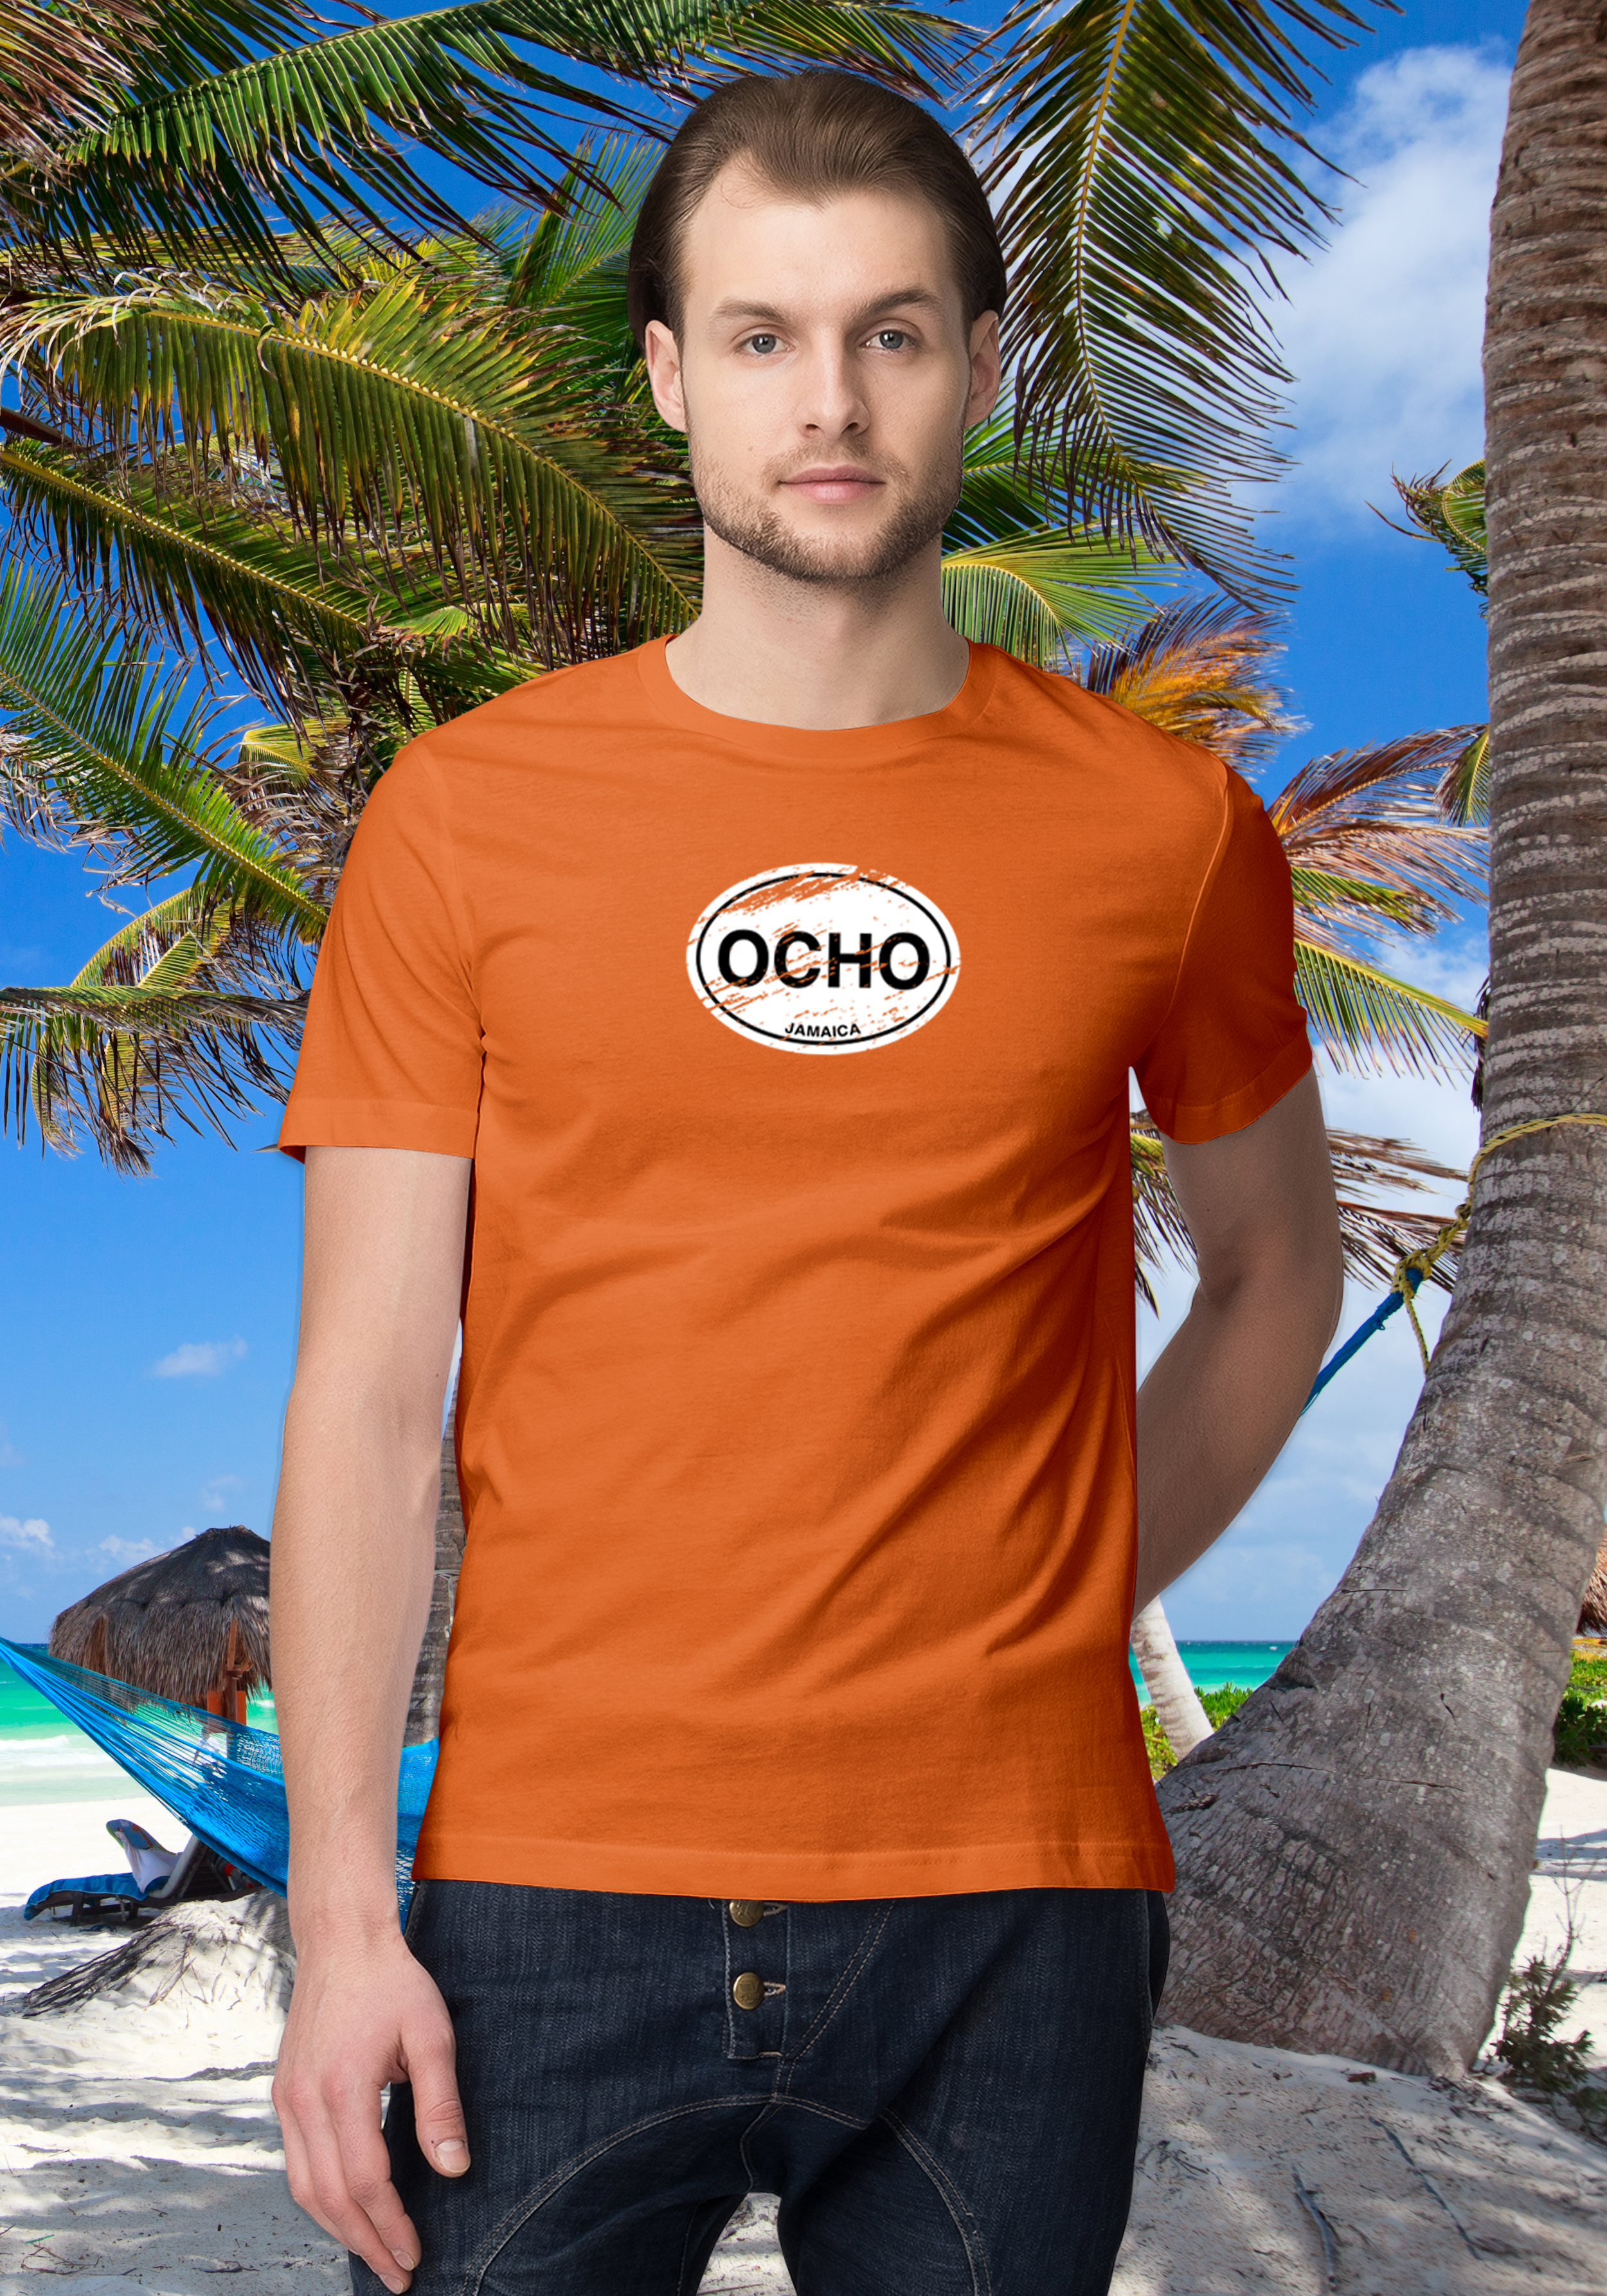 Ocho Rios Men's Classic T-Shirt Souvenirs - My Destination Location